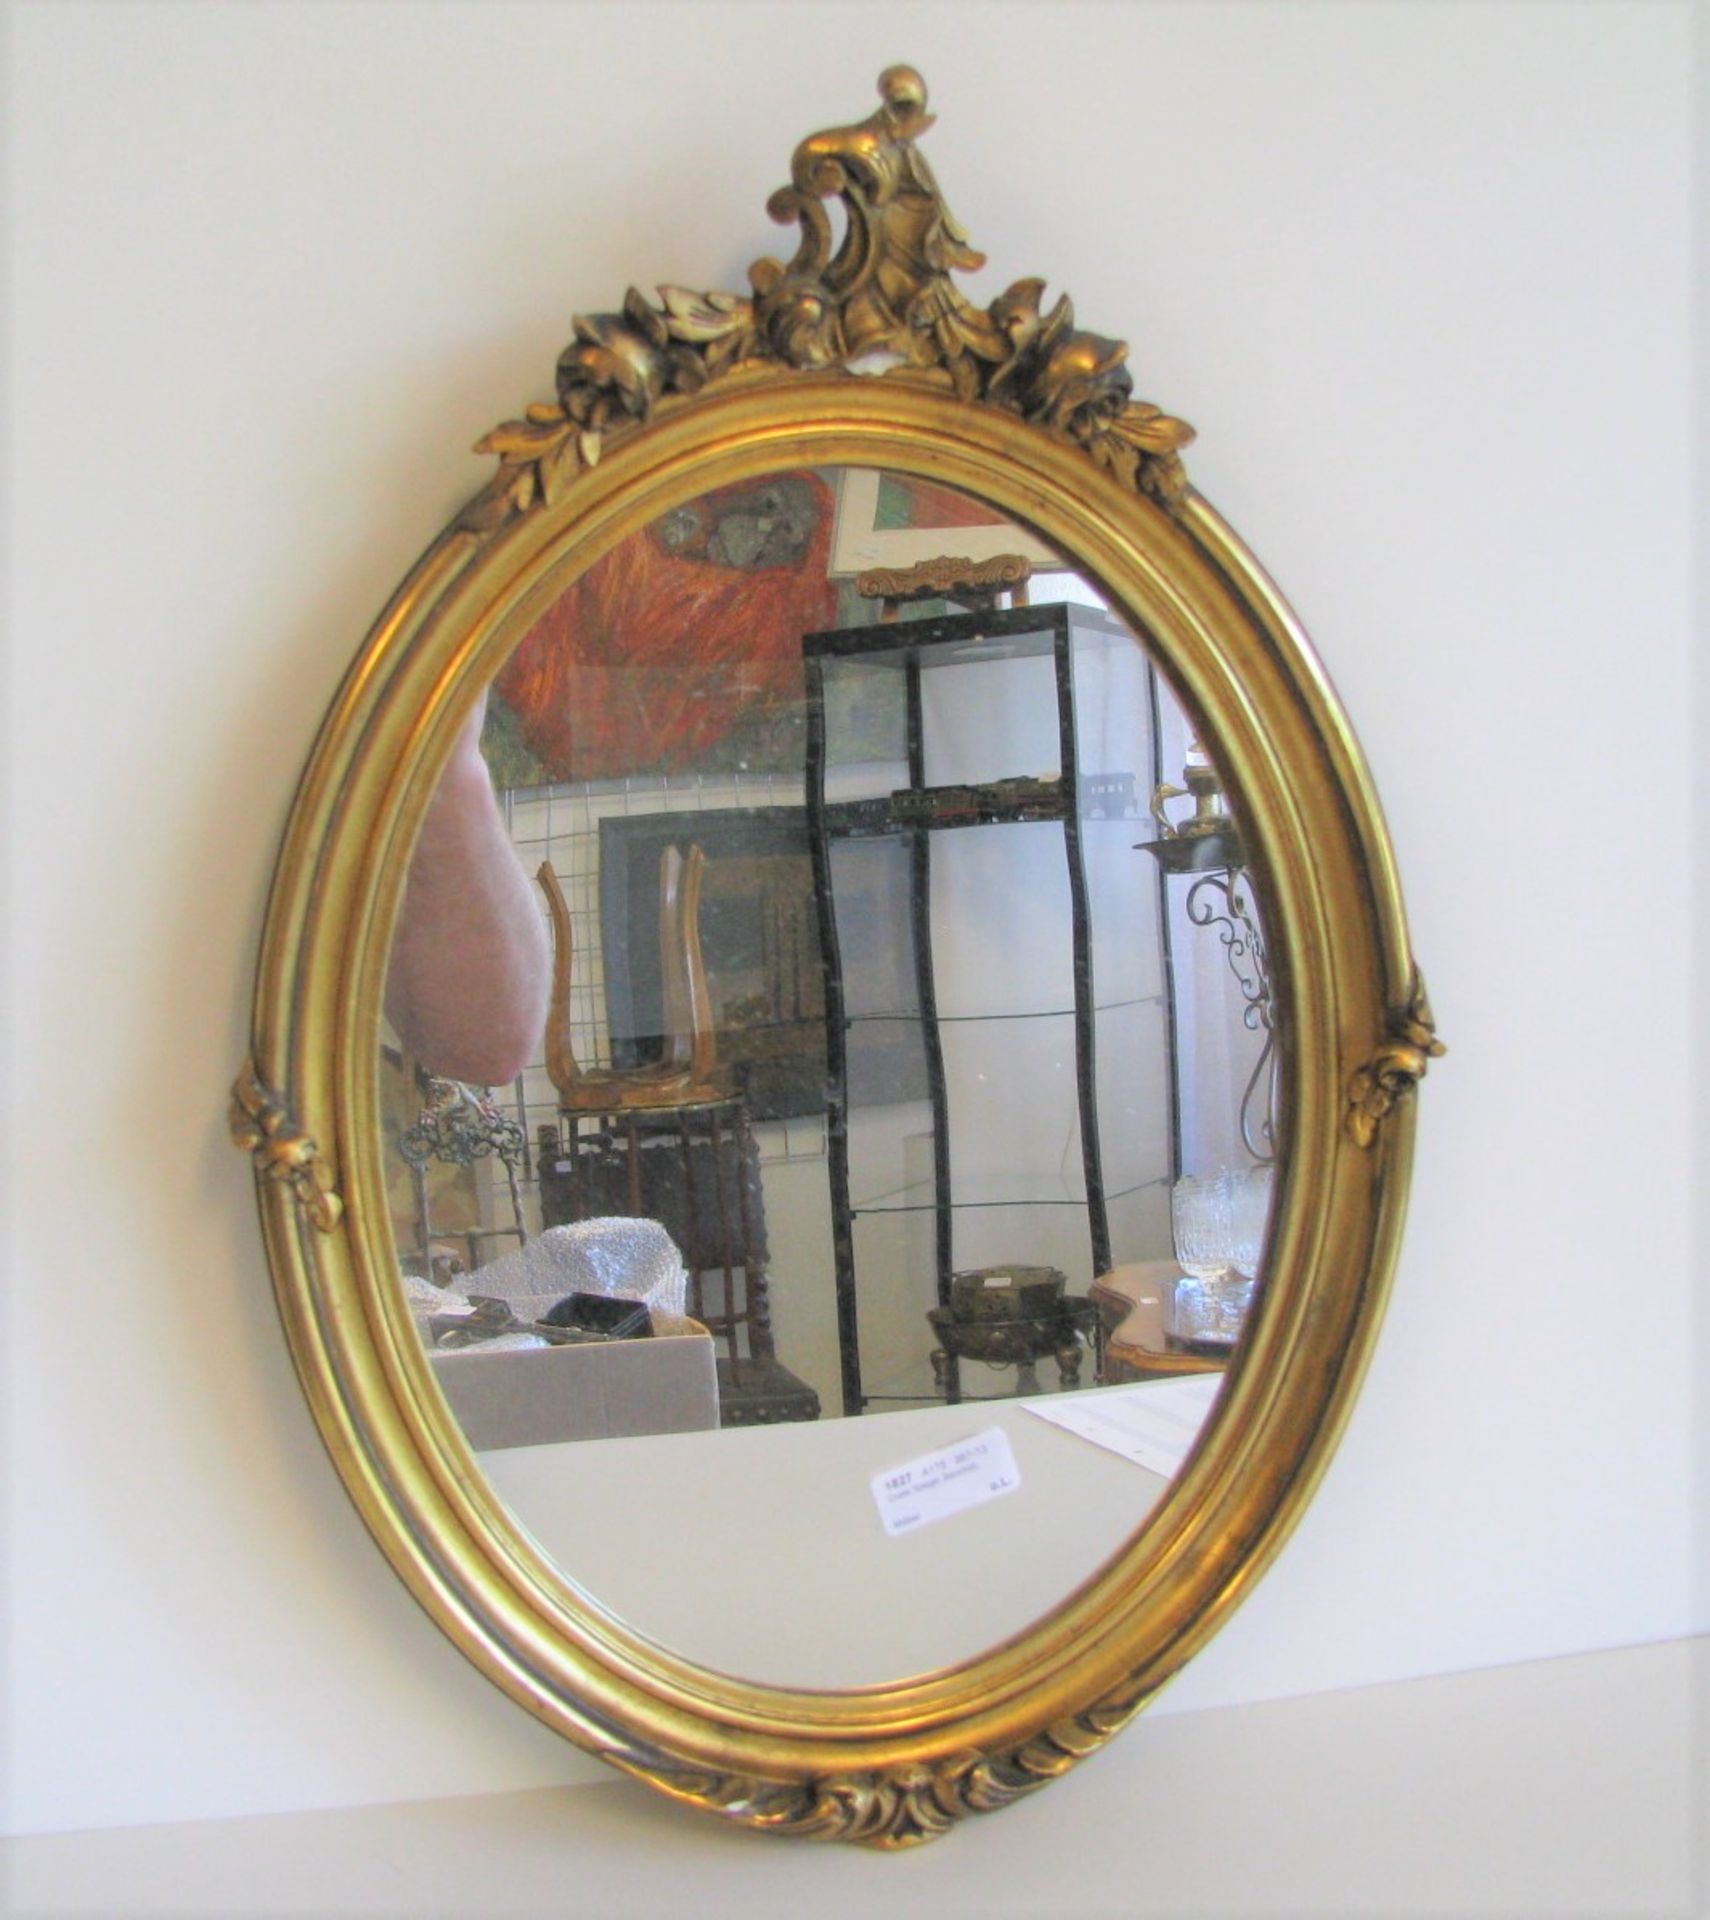 Ovaler Spiegel, Barockstil, Stuck vergoldet, 53 x 37,5 cm.